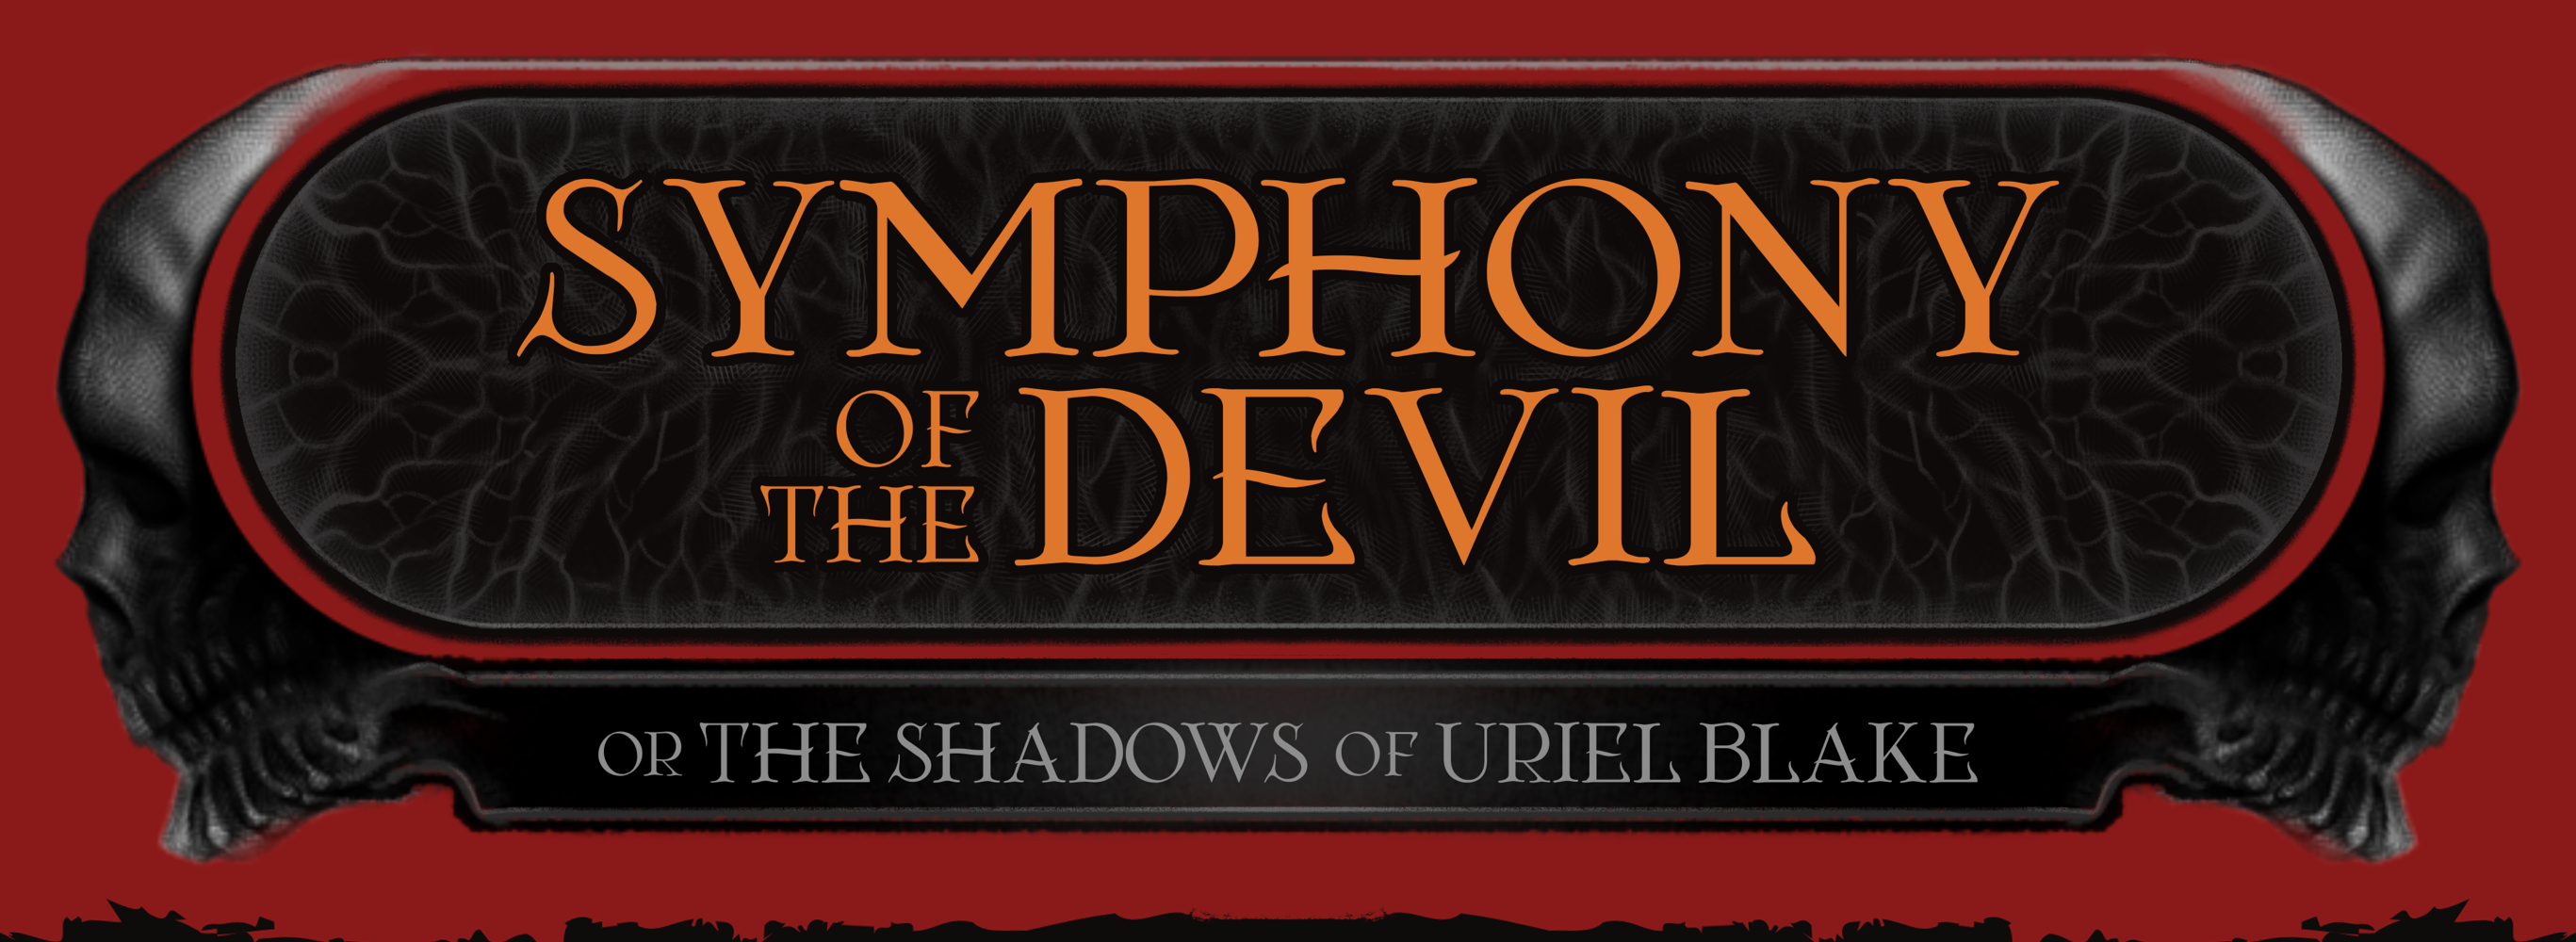 Symphony of the Devil